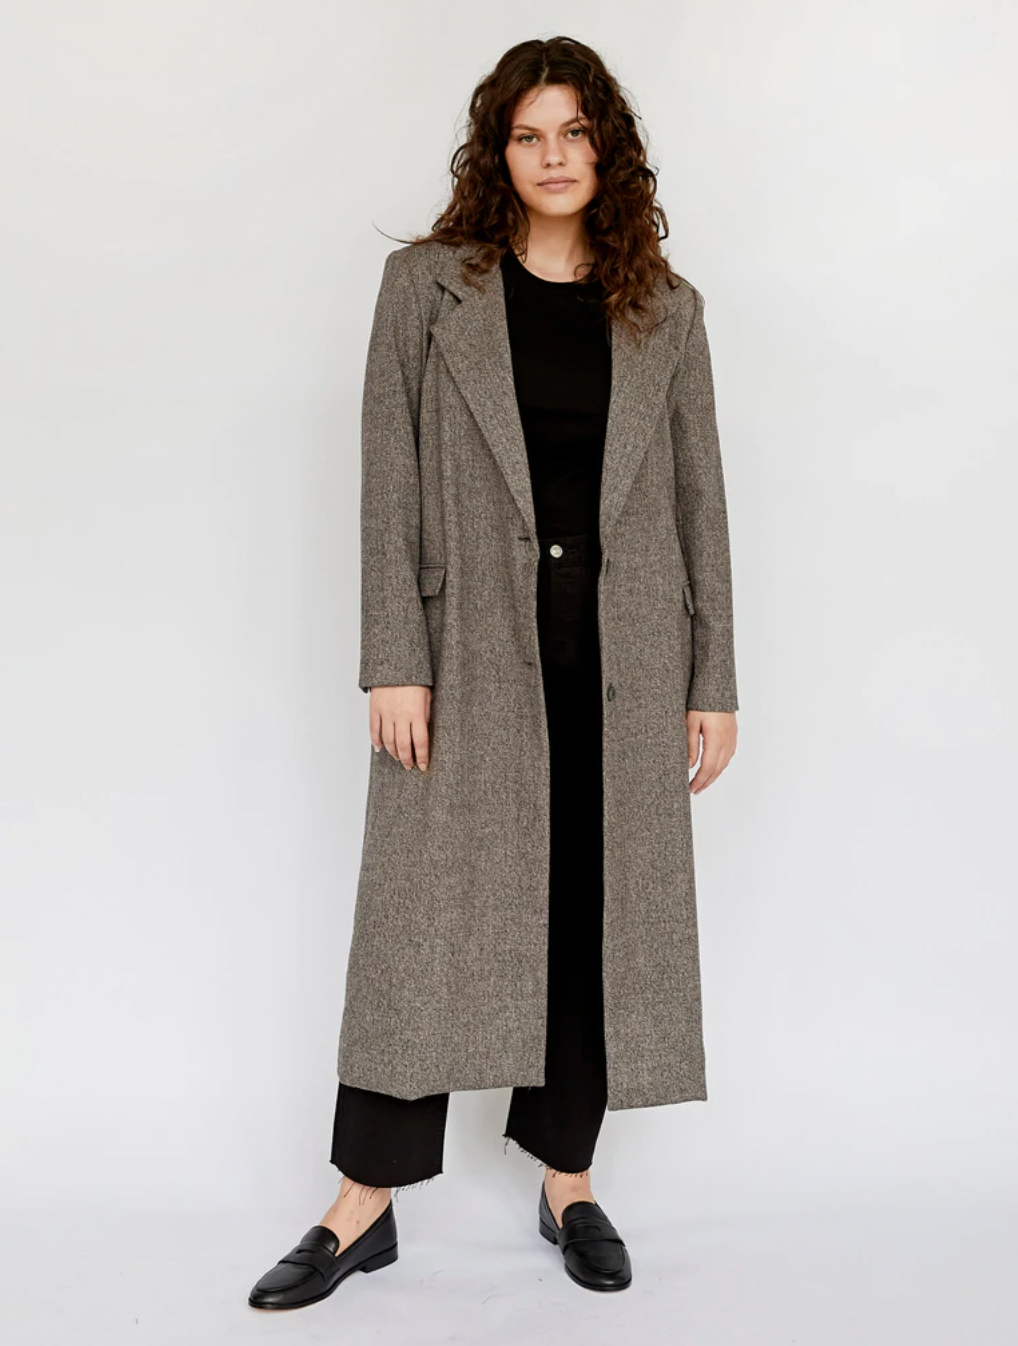 Matin + Wool Tweed Coat